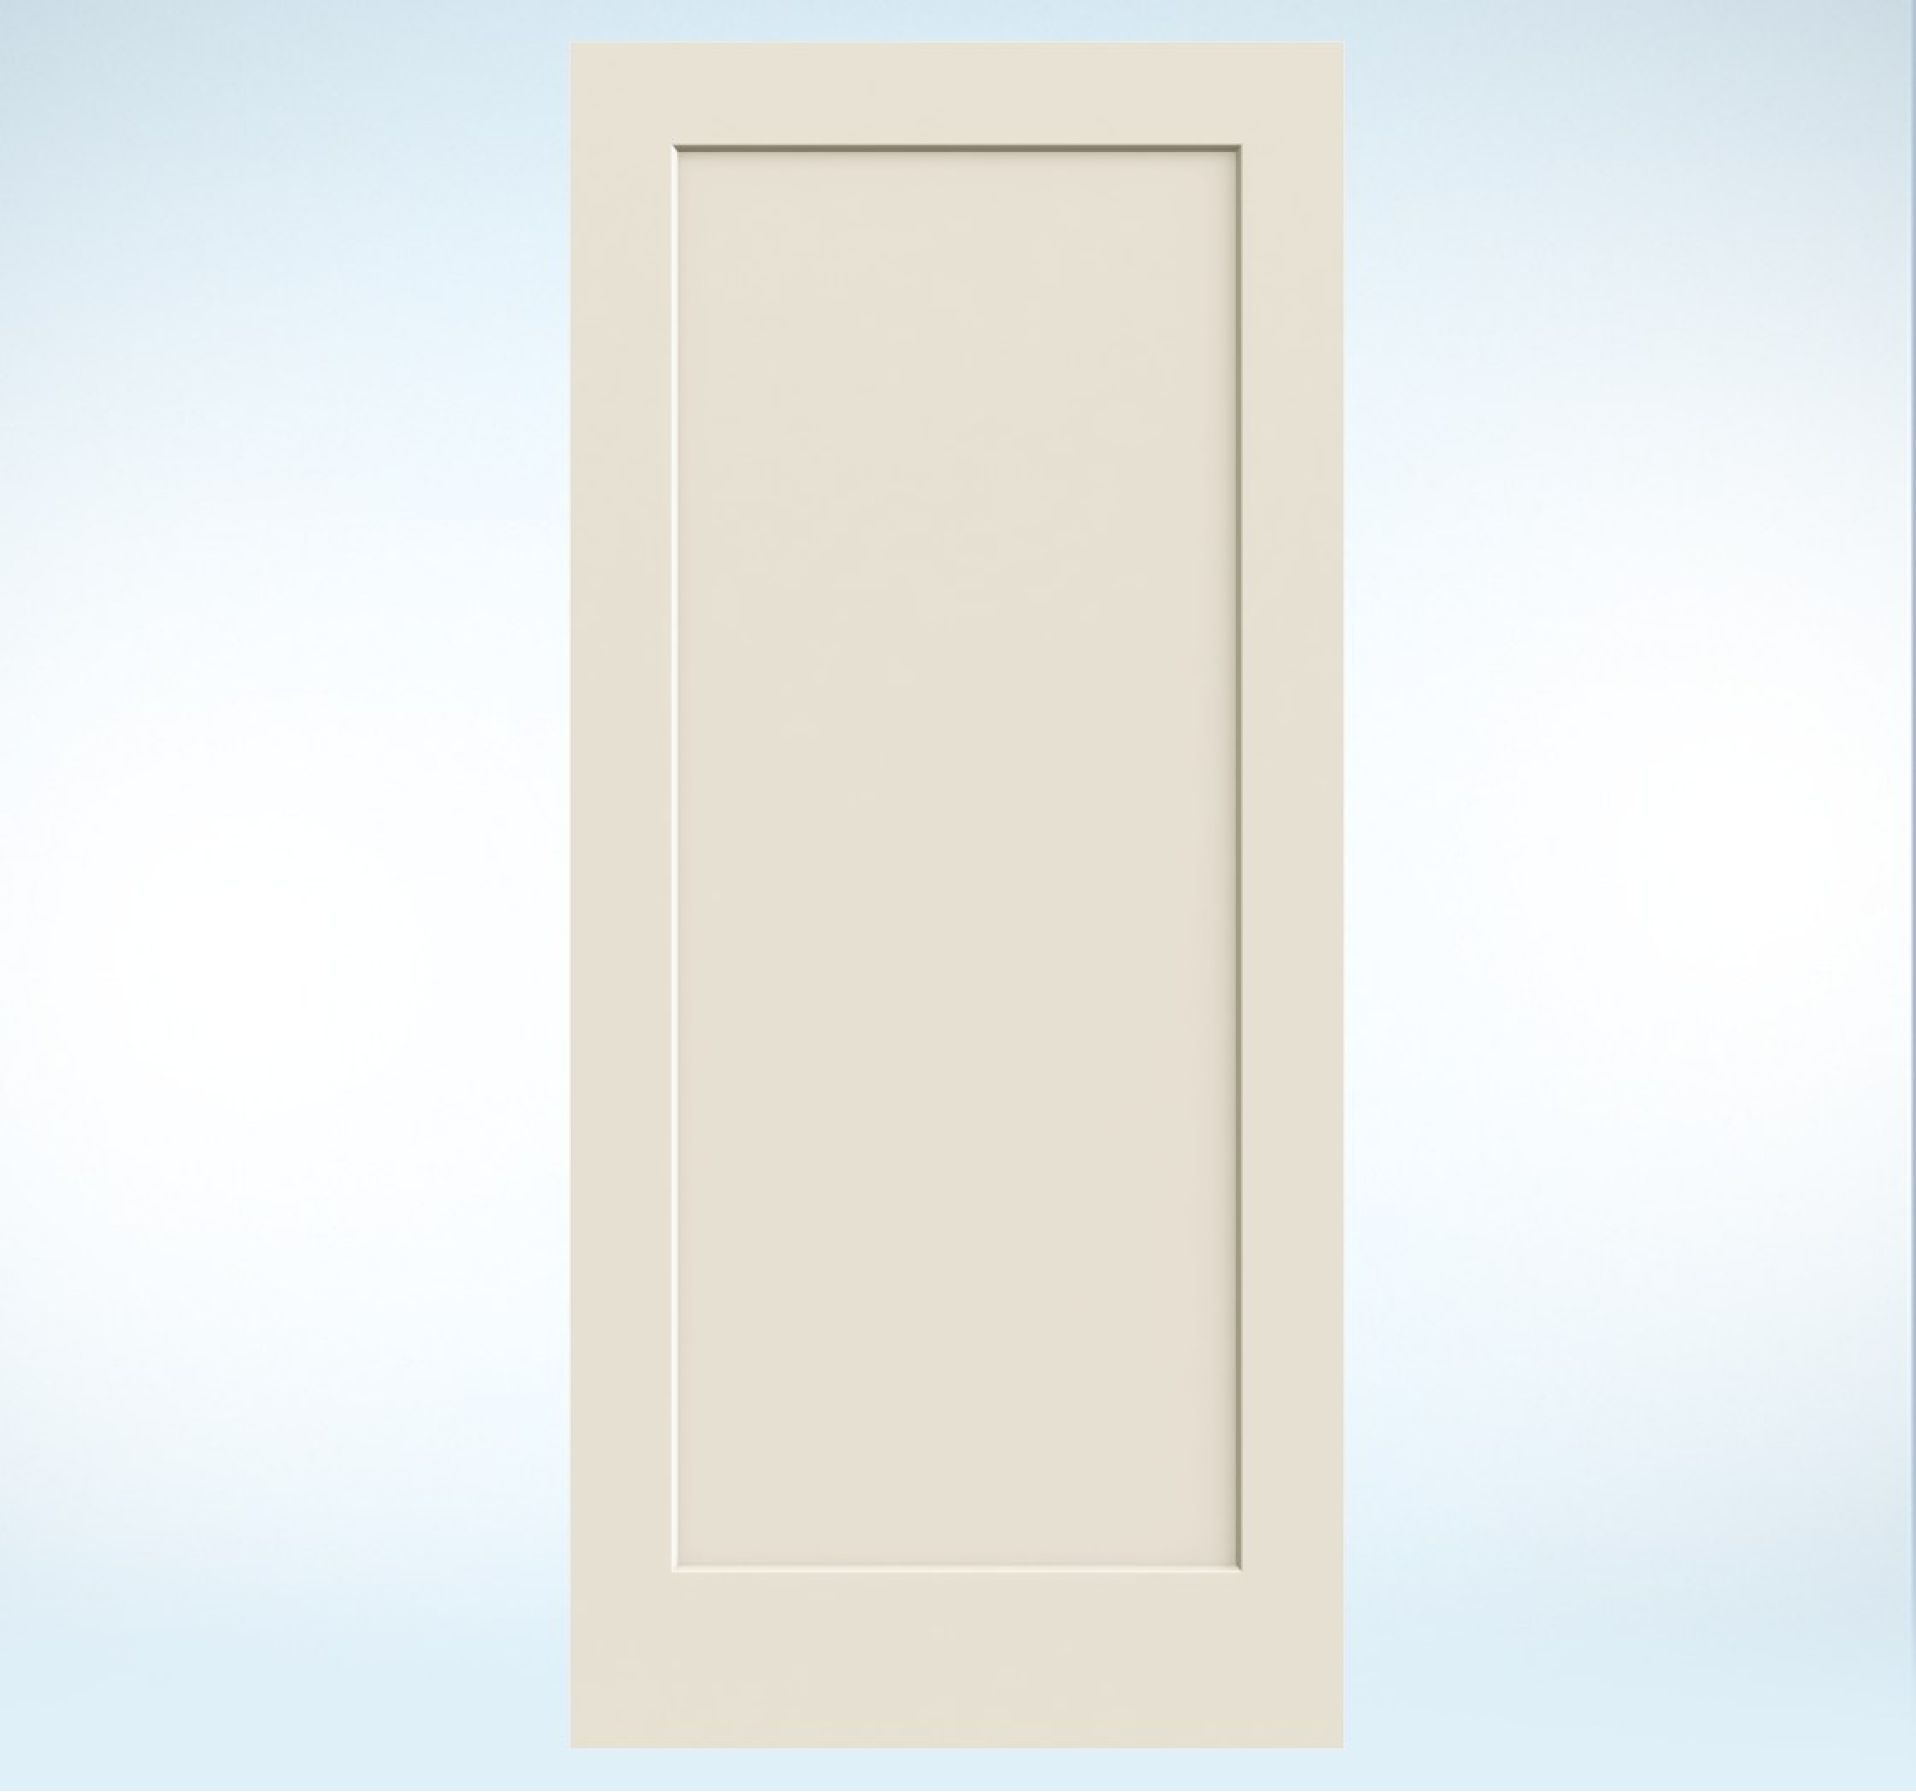 Molded Wood Composite All Panel Interior Door | JELD-WEN Doors ...